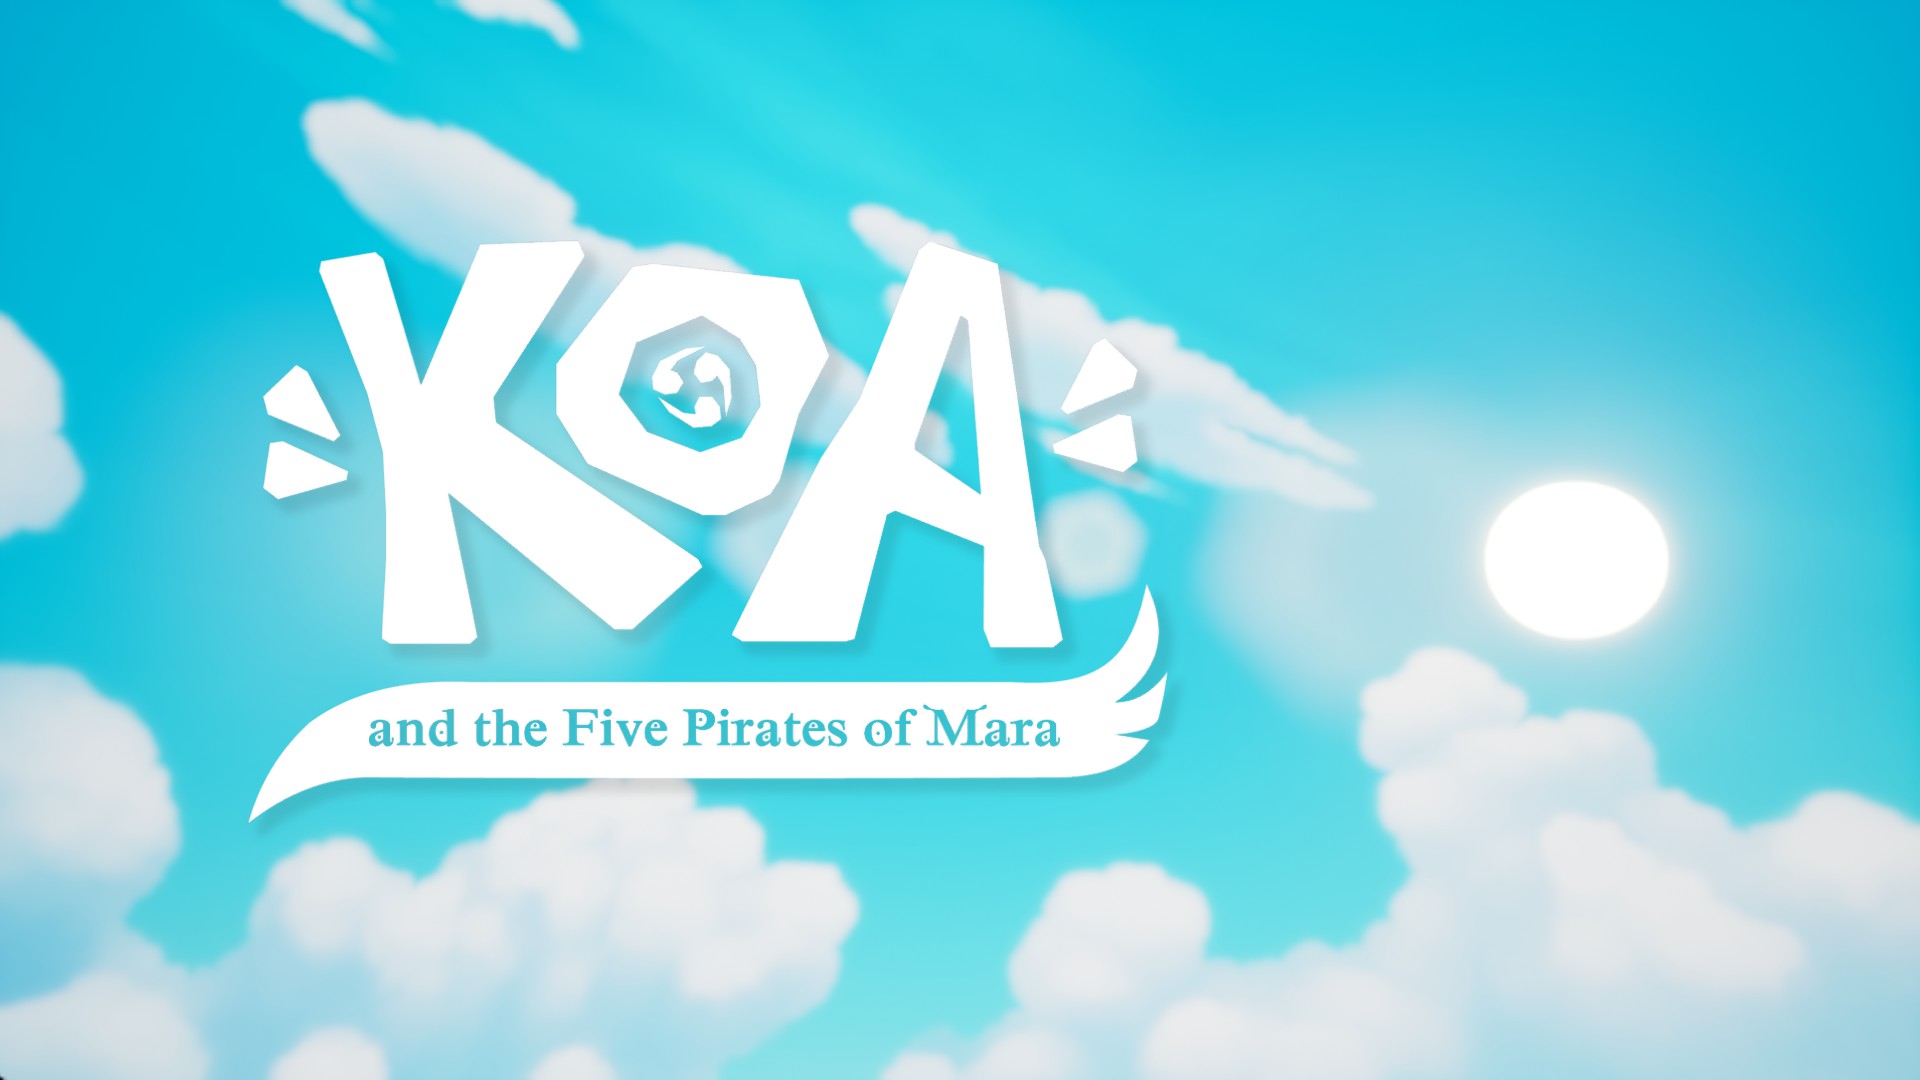 Koa and the Five Pirates of Mara, un plataformas para desconectar